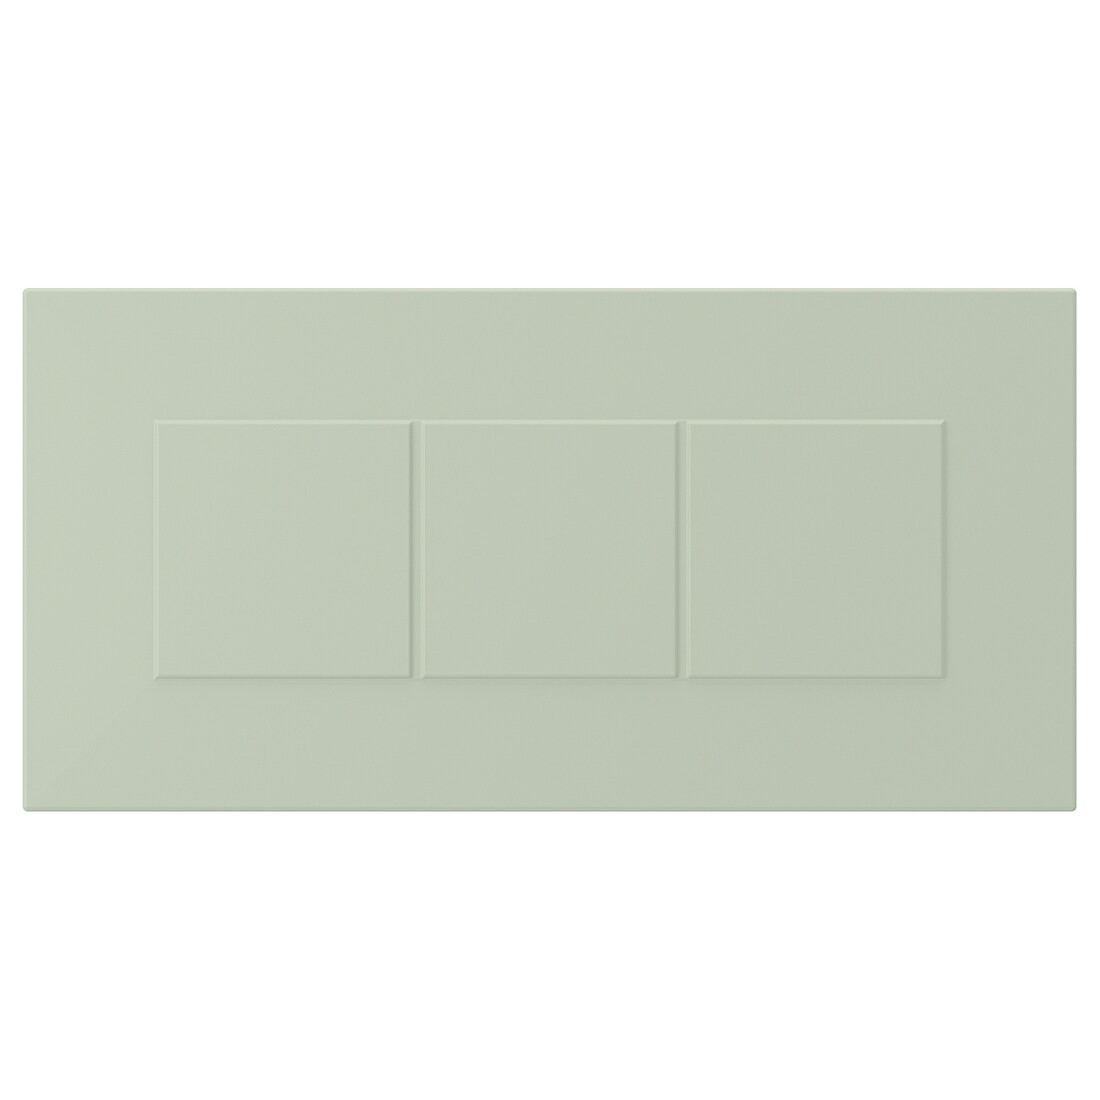 IKEA STENSUND СТЕНСУНД Фронтальная панель ящика, светло-зеленый, 40x20 см 40524006 | 405.240.06